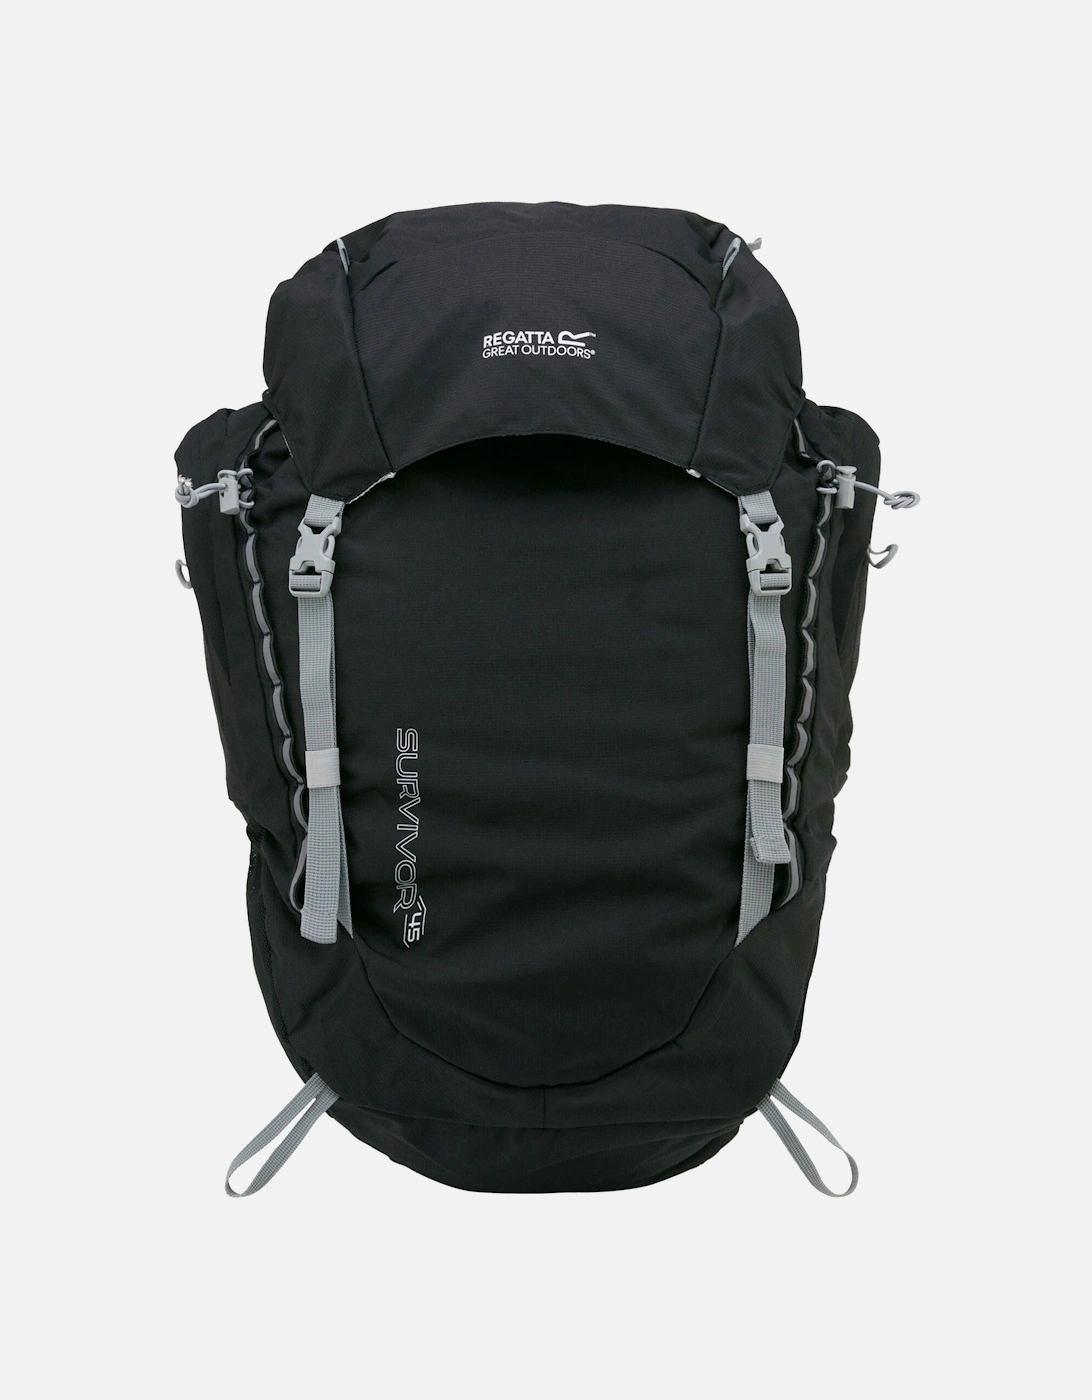 Survivor V4 45L Backpack